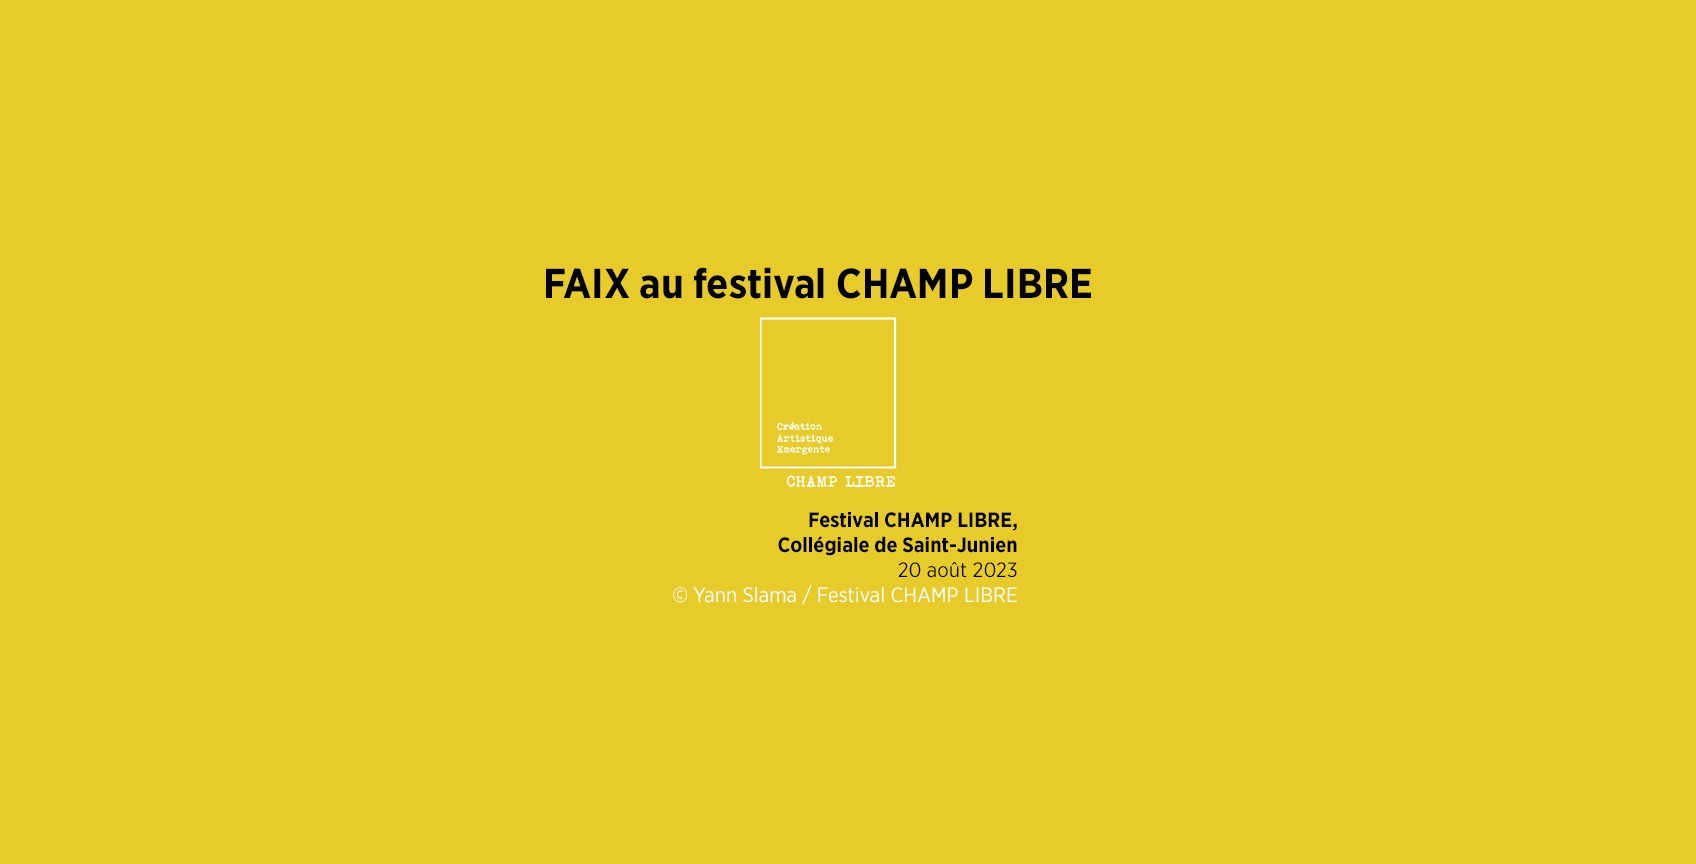 FAIX (lecture performance) au Festival CHAMP LIBRE 2023